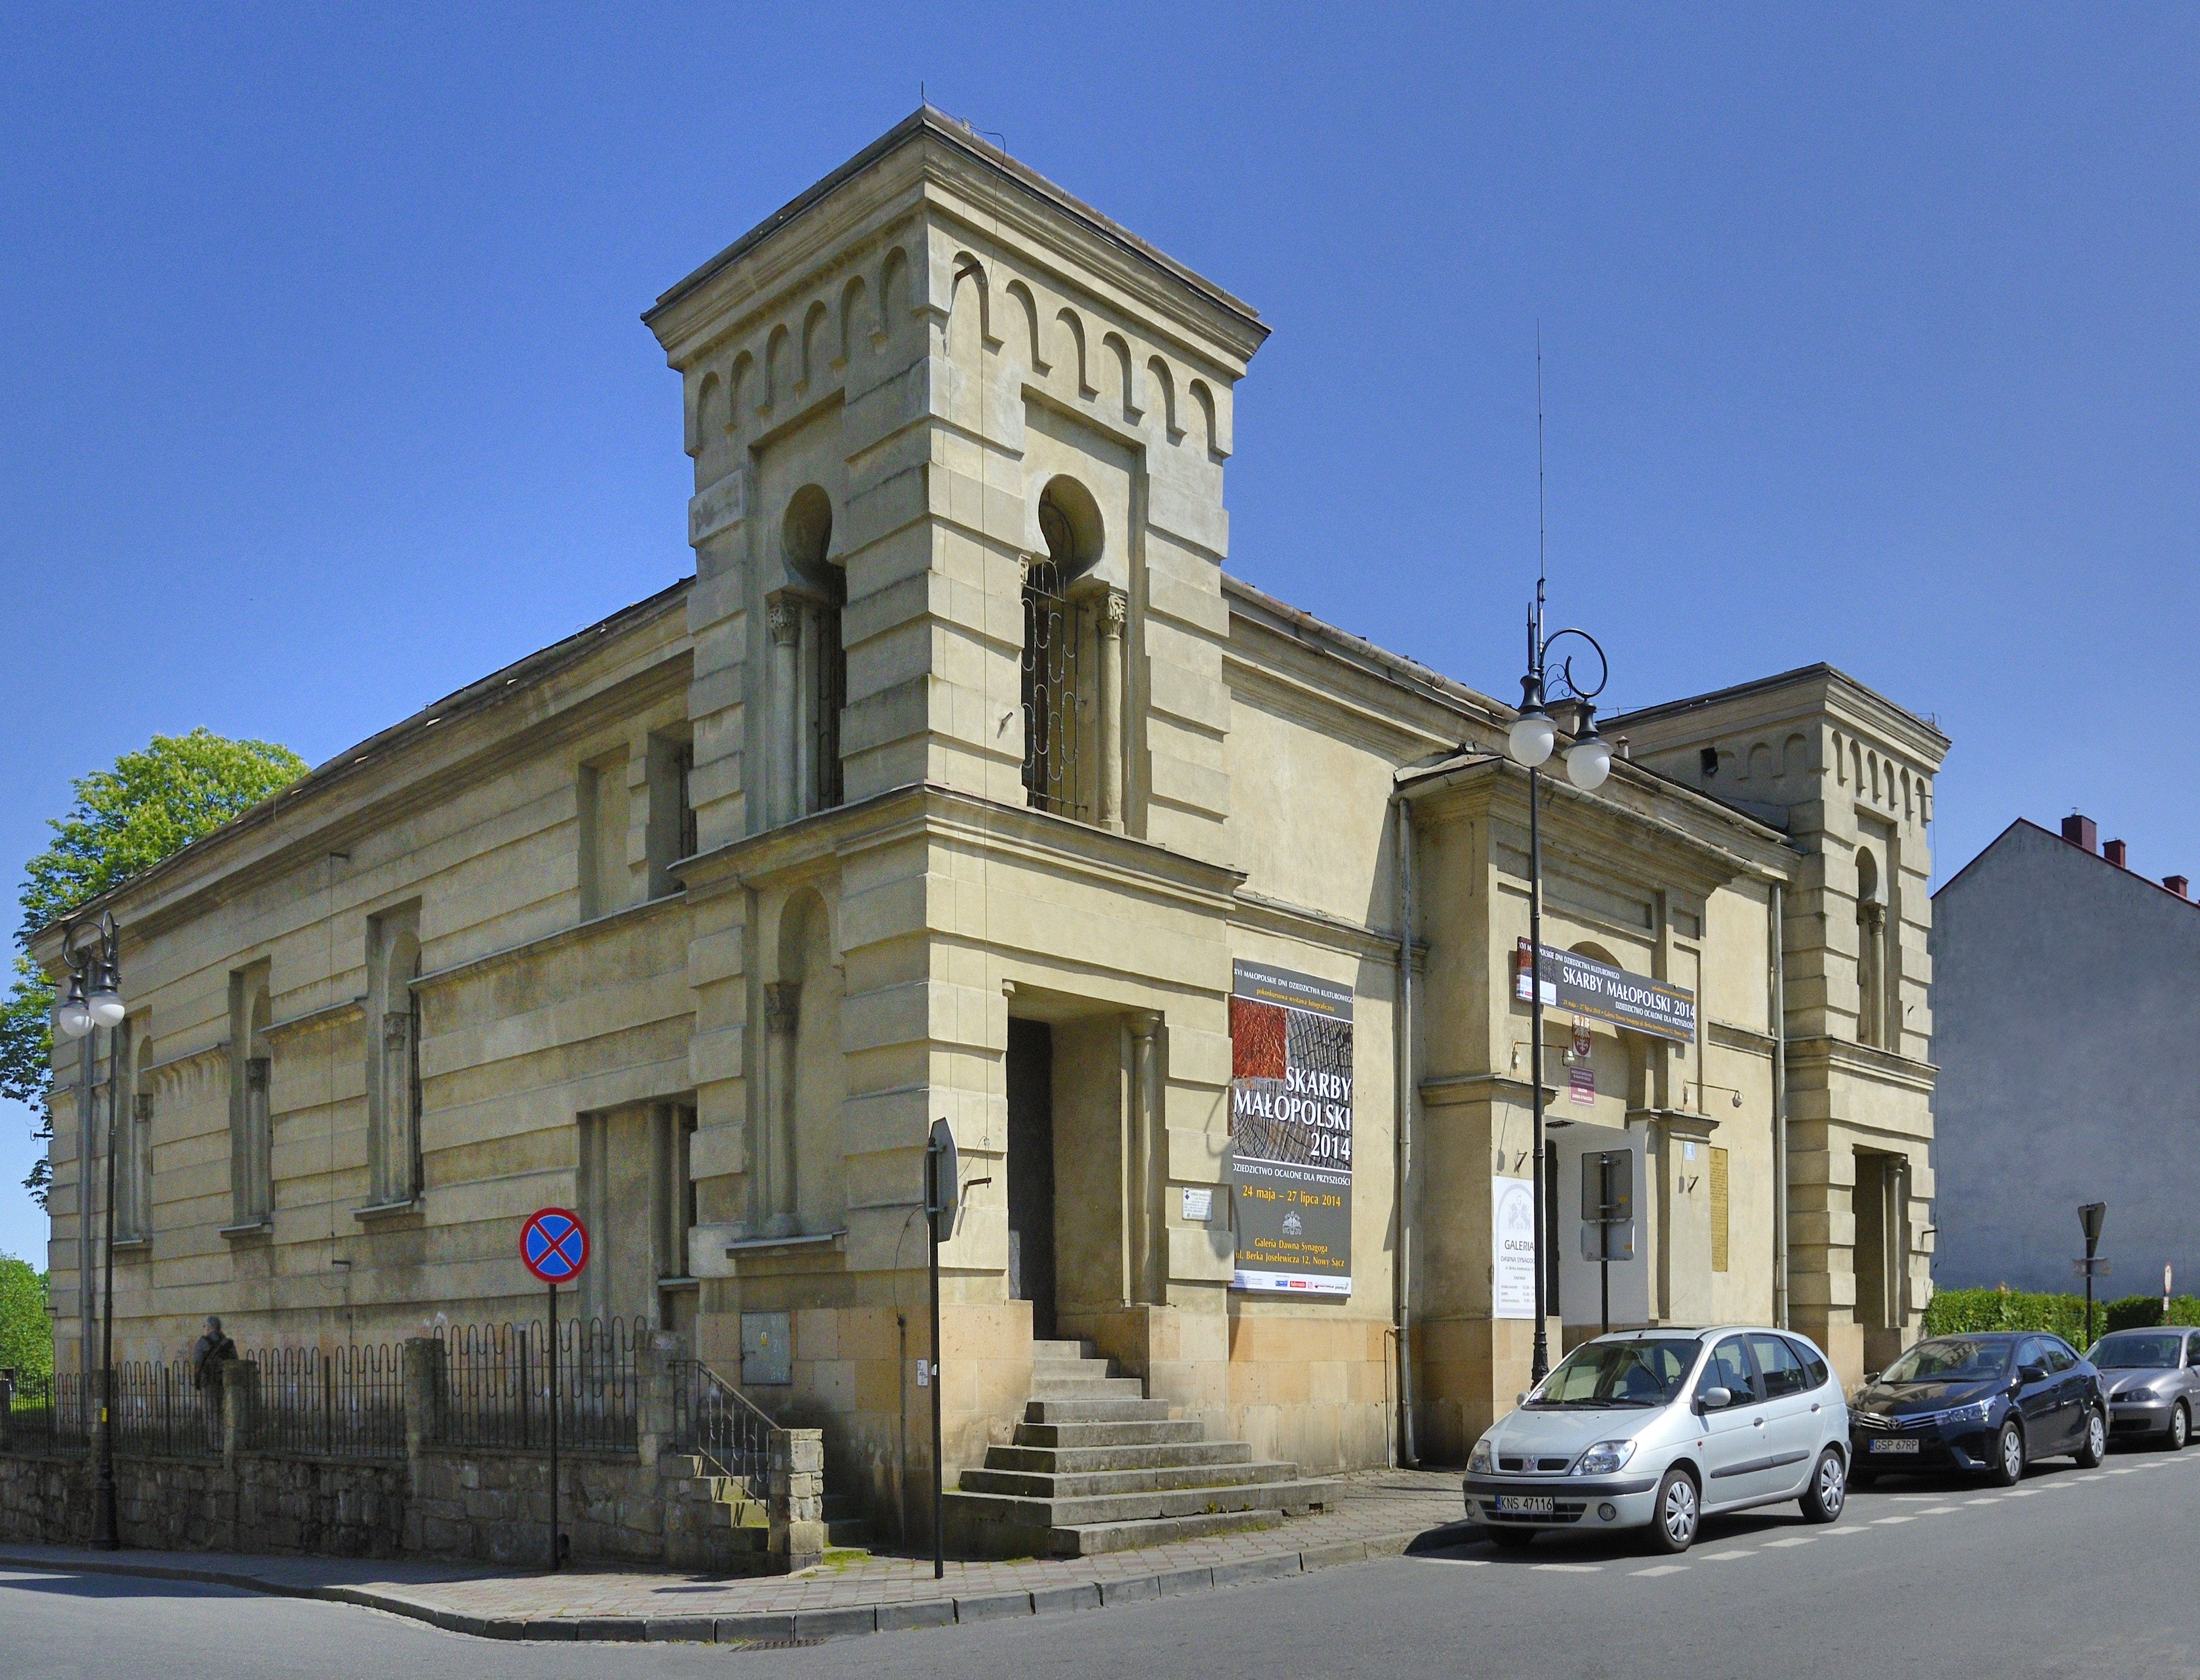 Nowy Sacz Synagoga Znow Bedzie Sluzyc Celom Religijnym Muzeum Okregowe Zostanie Przeniesione Podroze